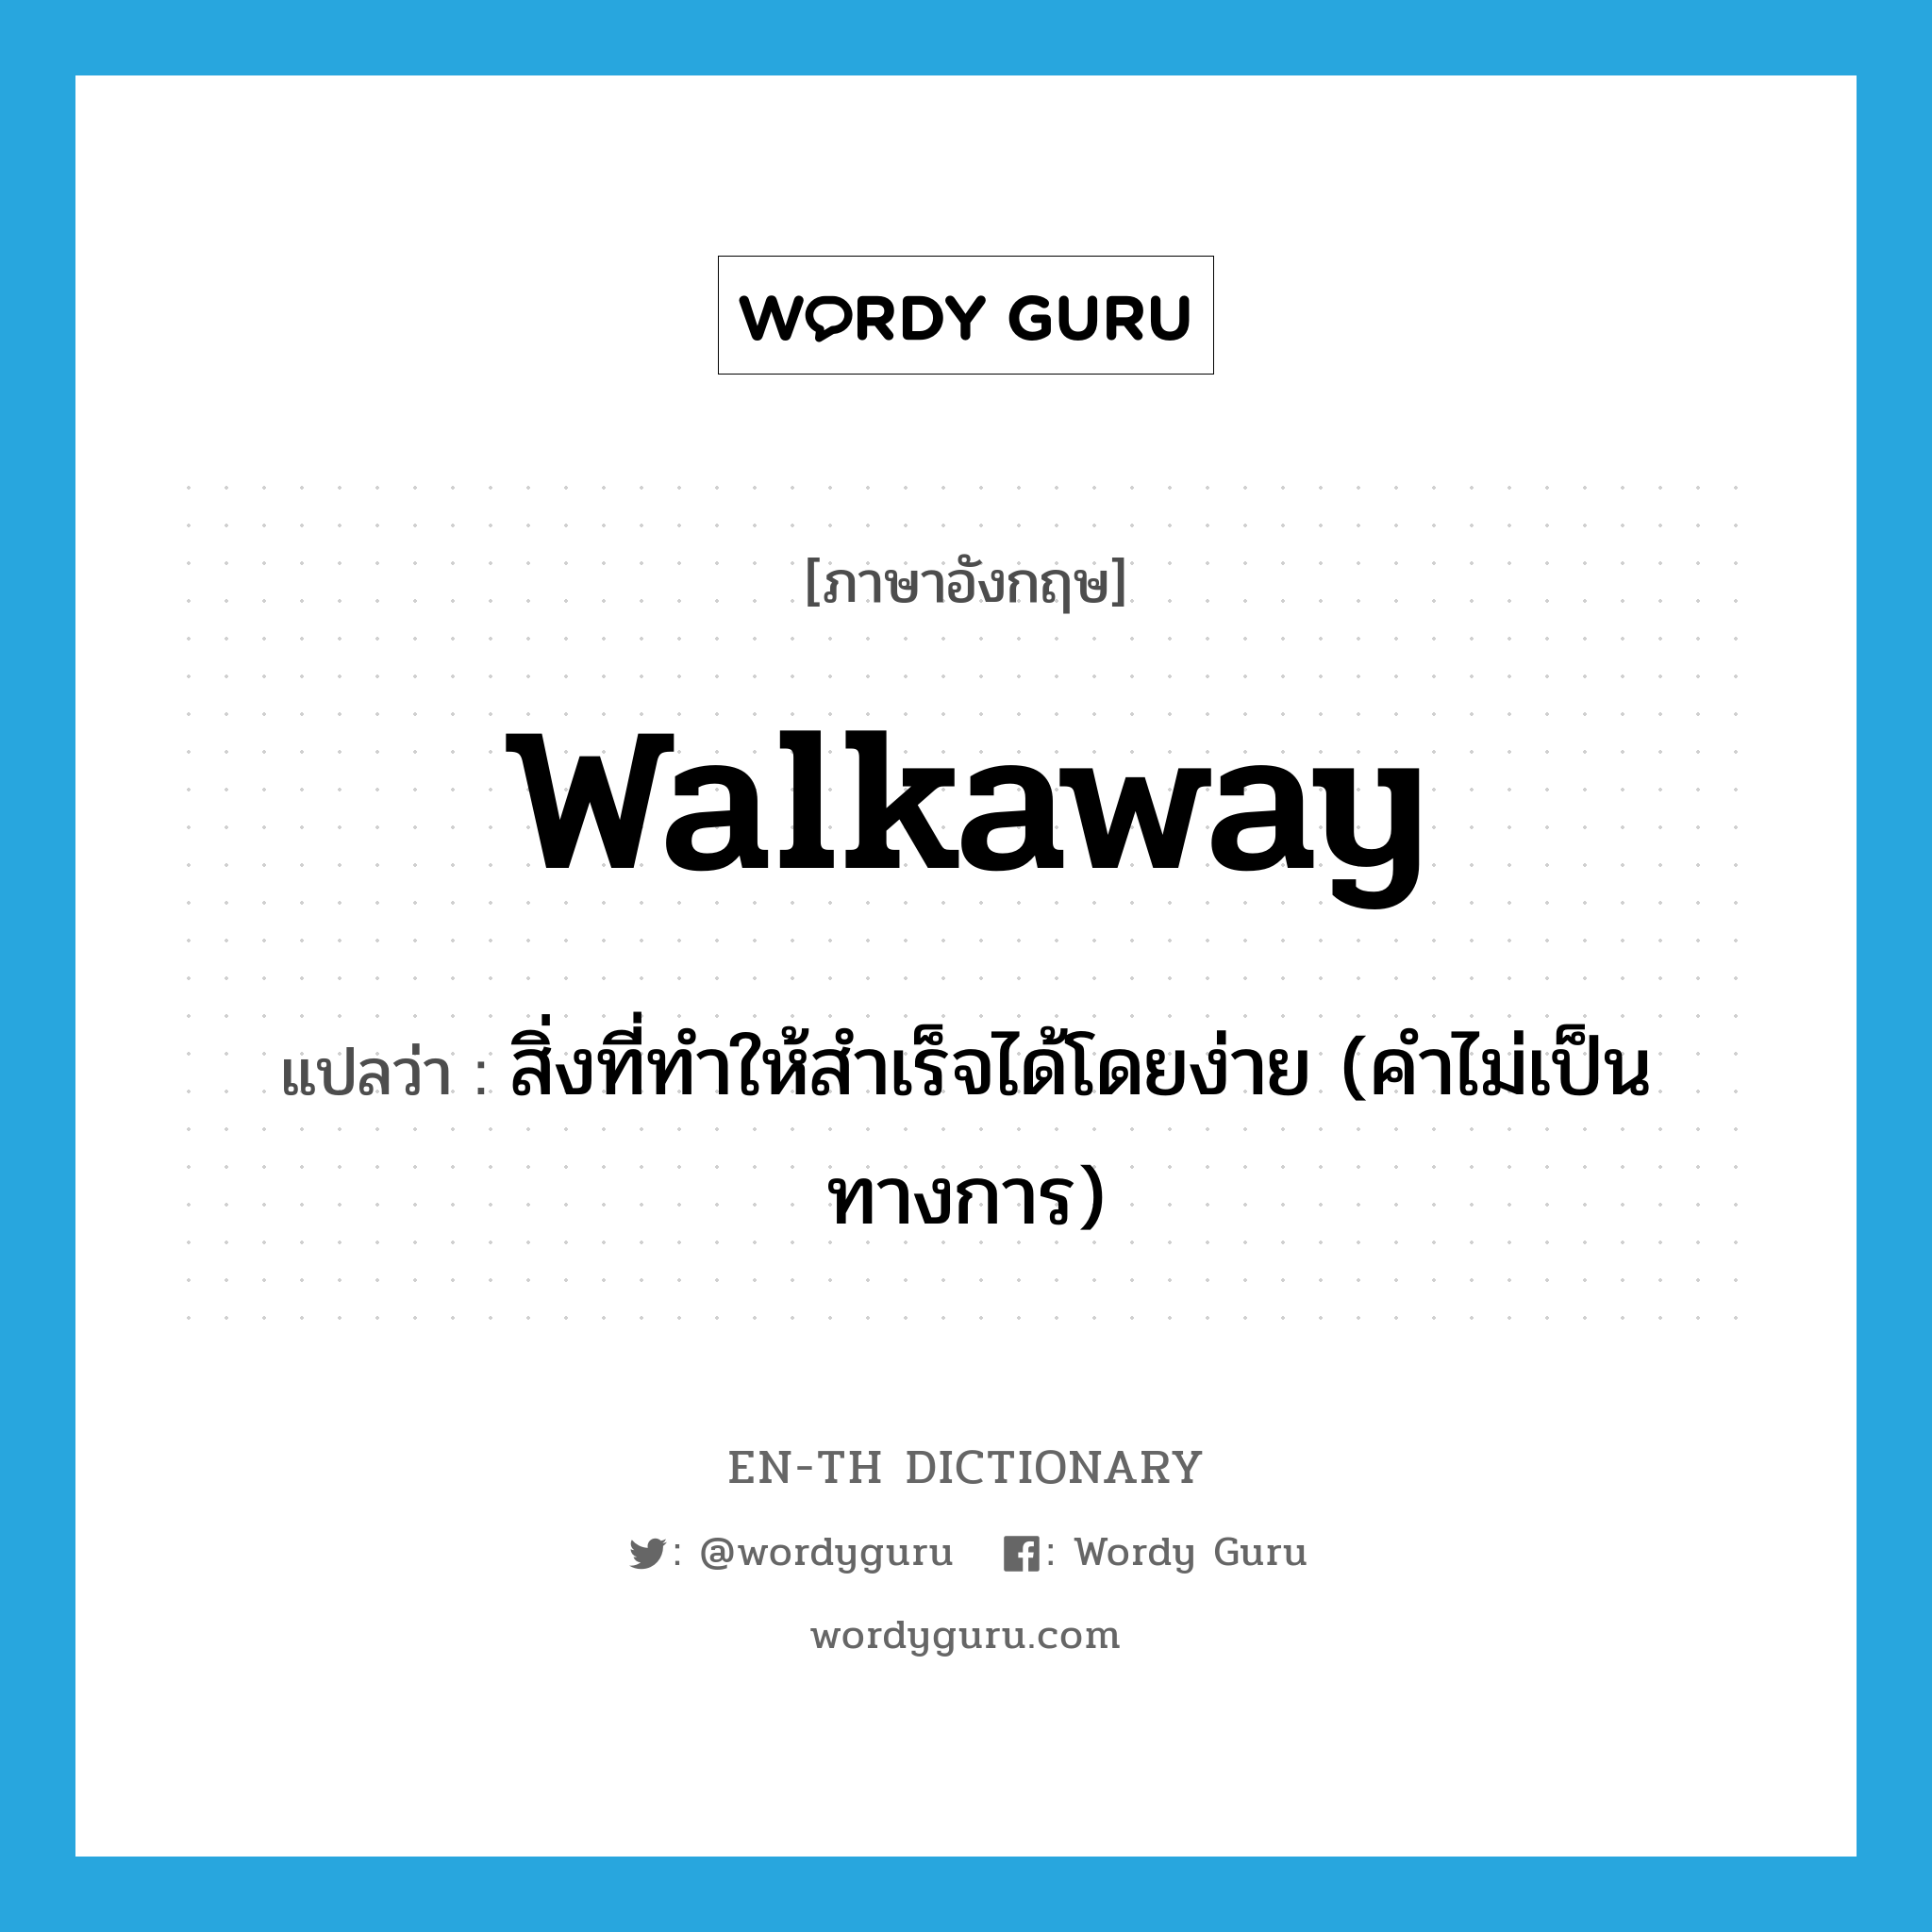 สิ่งที่ทำให้สำเร็จได้โดยง่าย (คำไม่เป็นทางการ) ภาษาอังกฤษ?, คำศัพท์ภาษาอังกฤษ สิ่งที่ทำให้สำเร็จได้โดยง่าย (คำไม่เป็นทางการ) แปลว่า walkaway ประเภท N หมวด N